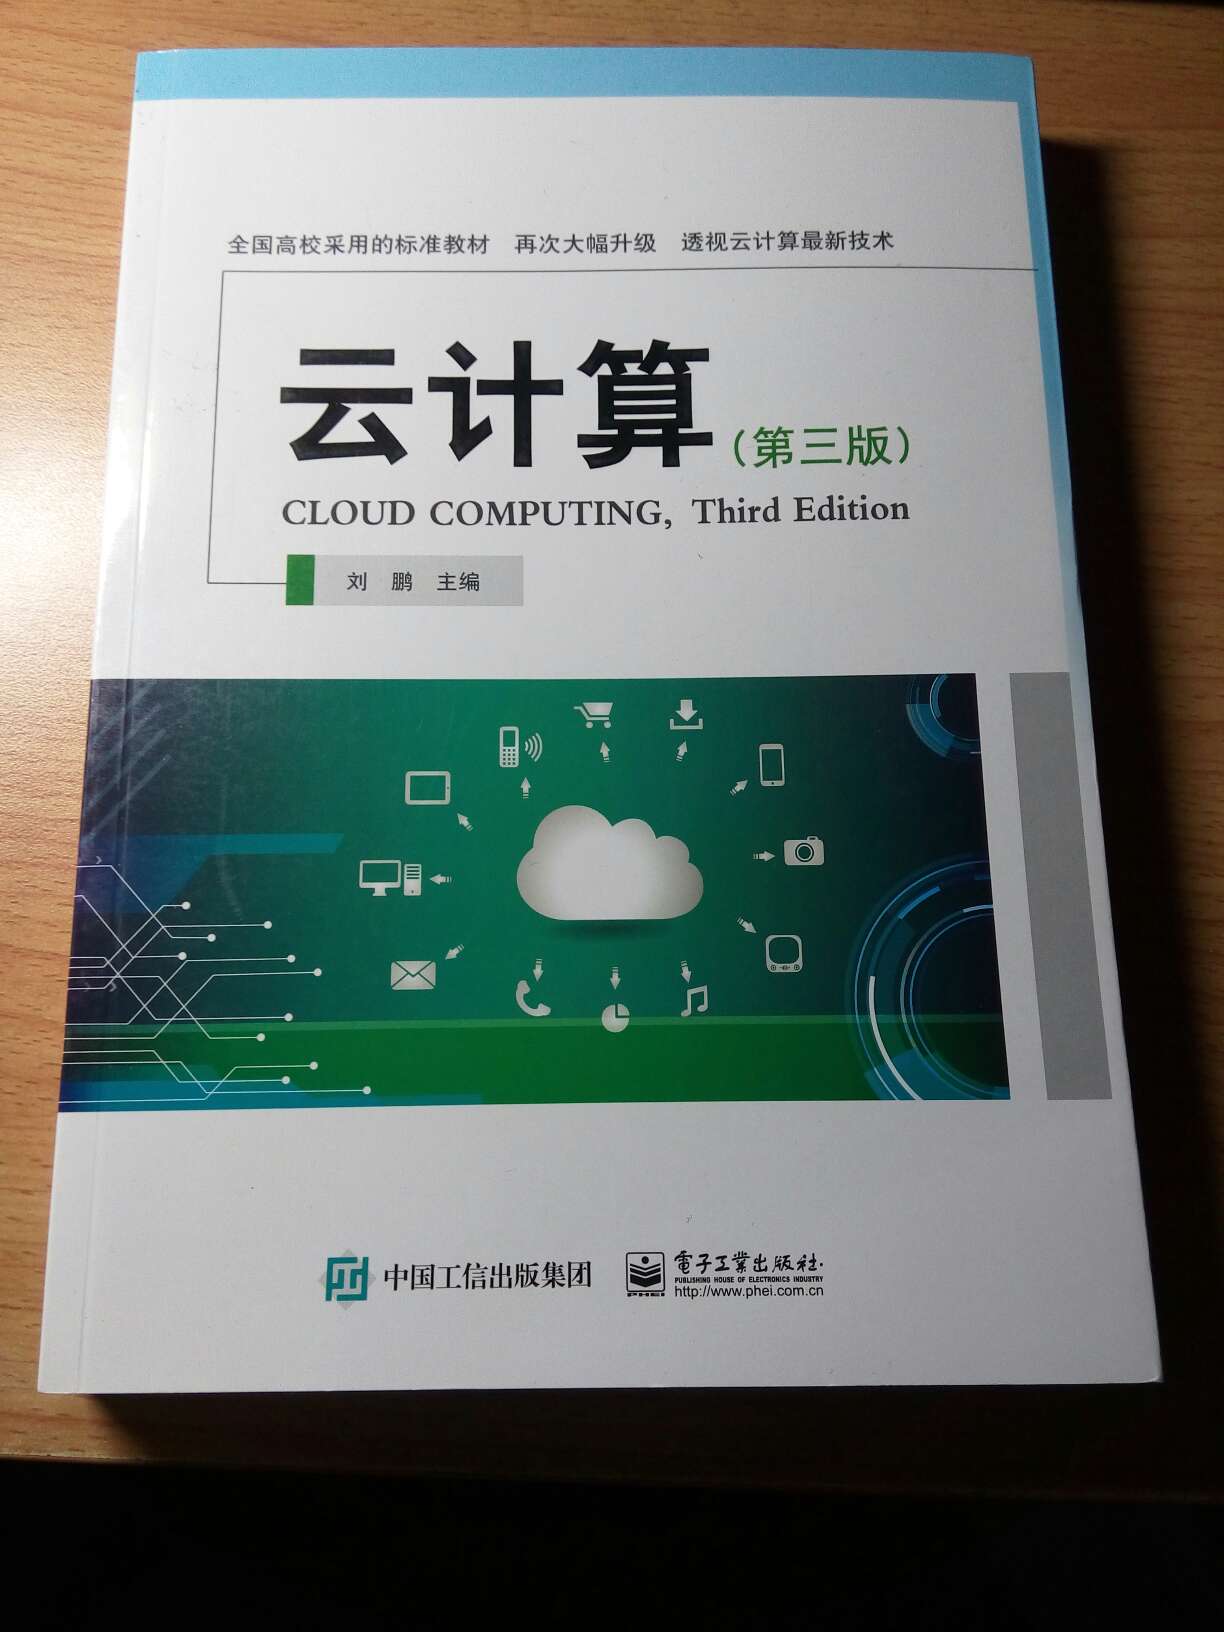 云计算是现在大数据下的发展趋势，刘鹏这本书比较新，内容技术都是最新的，慢慢研究。